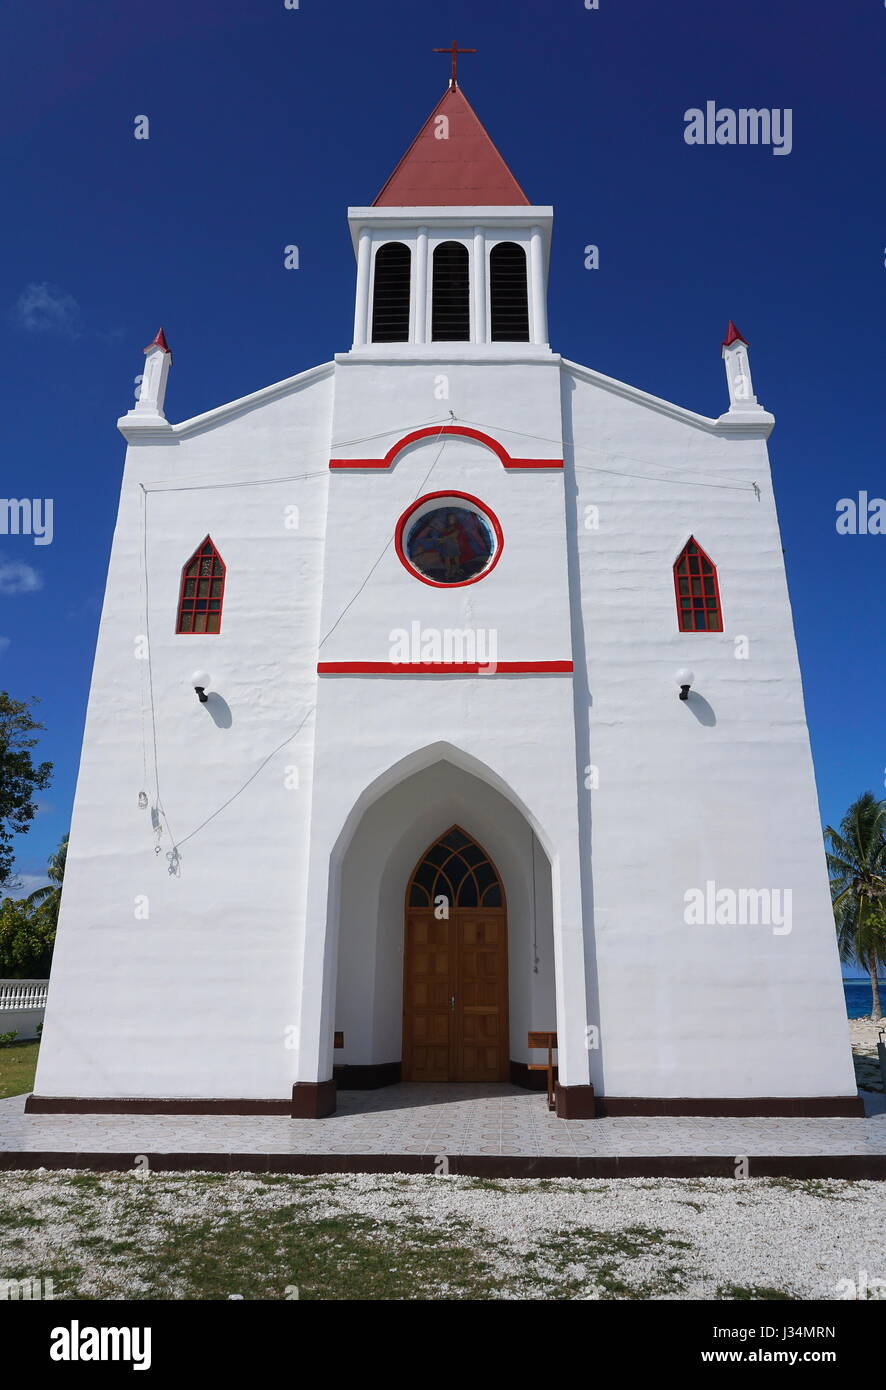 Église dans le village d'Avatoru, atoll de Rangiroa, Tuamotu, Polynésie Française, Pacifique sud Banque D'Images